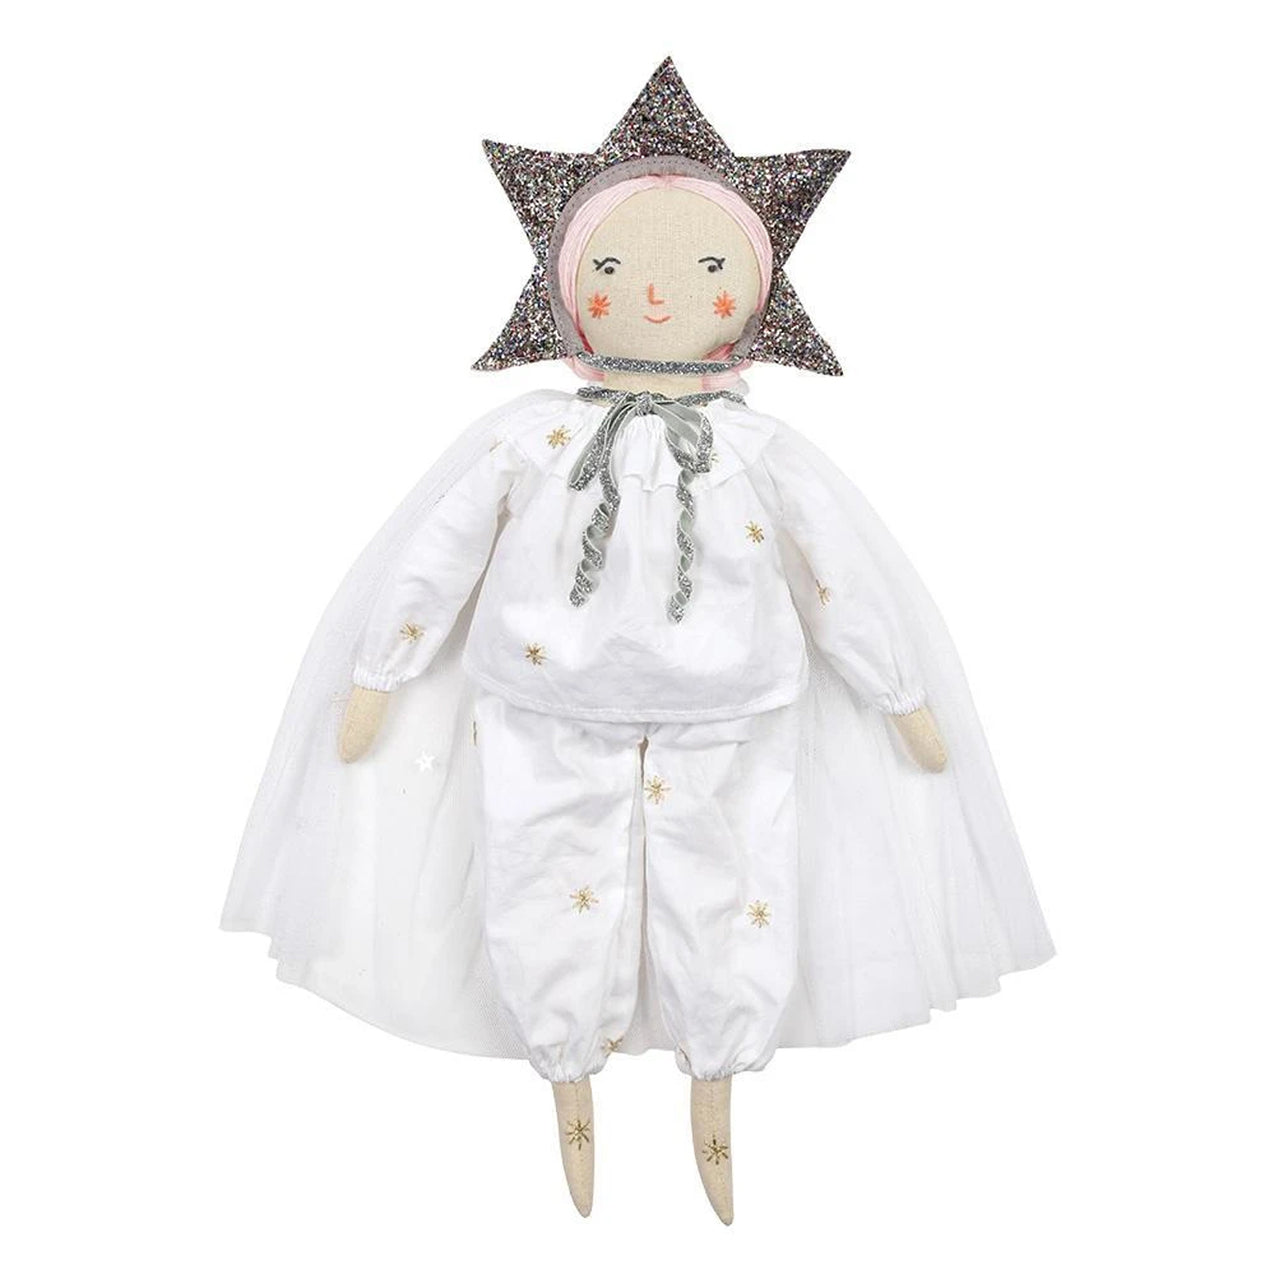 Star Doll Dress up Kit (For Meri Meri Dolls)